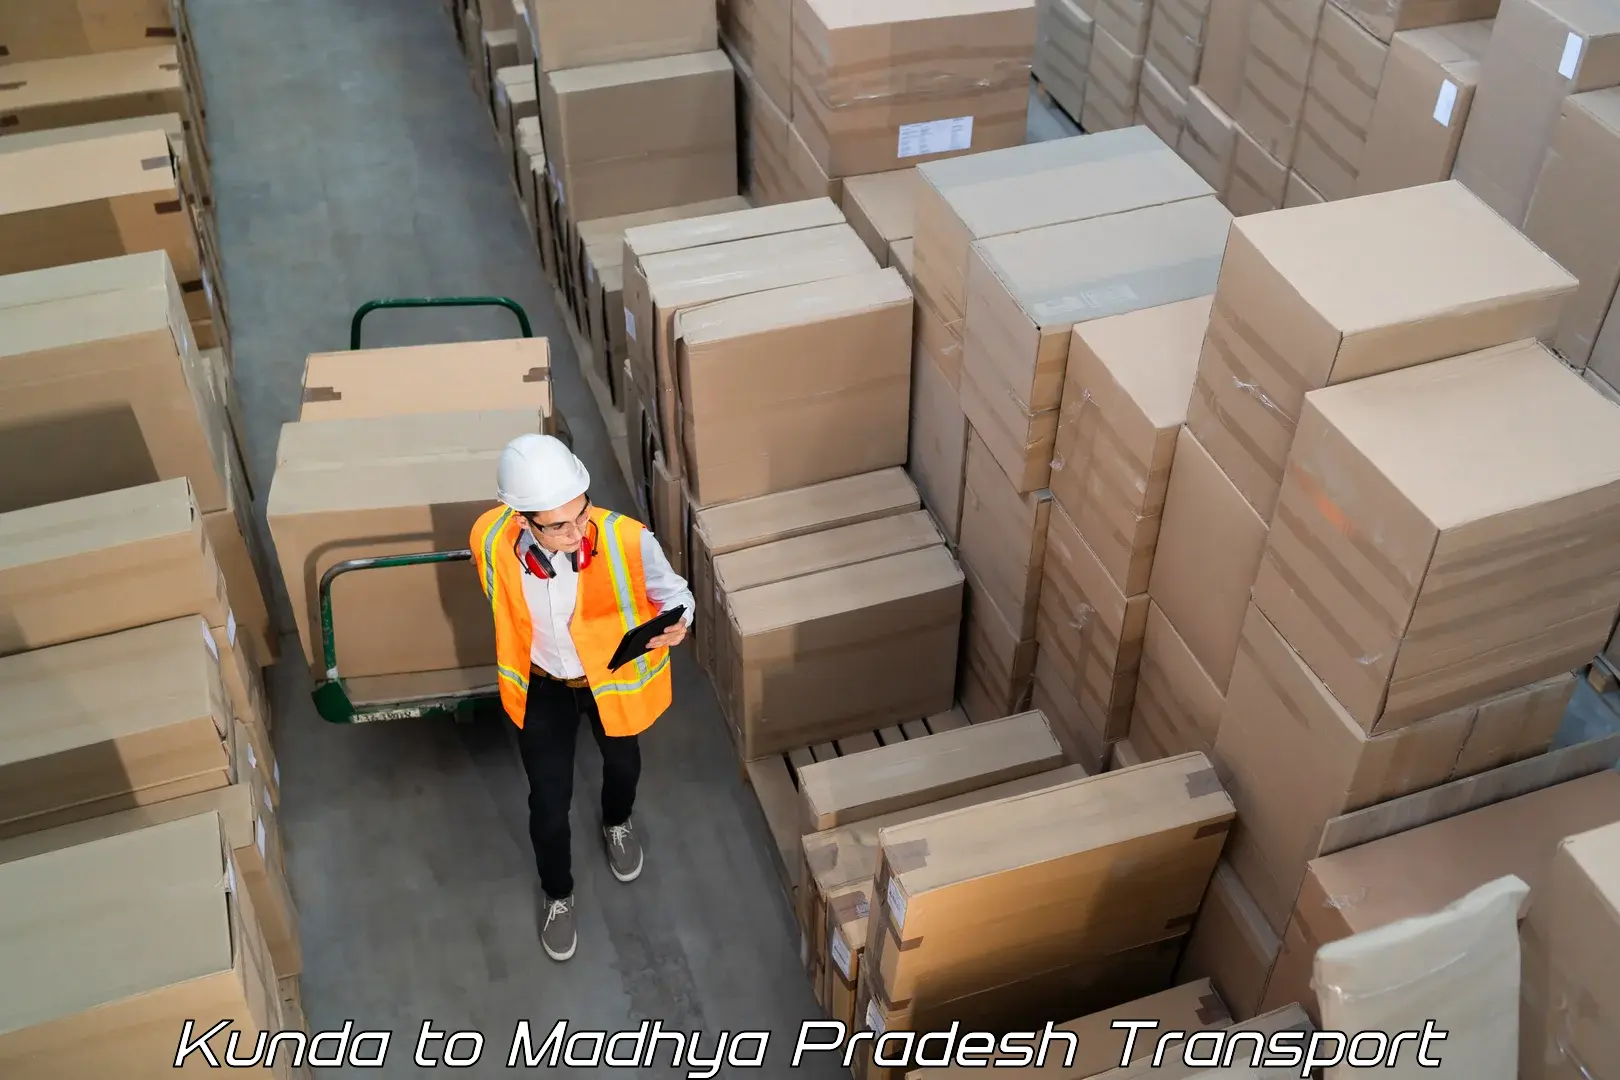 Logistics transportation services Kunda to Agar